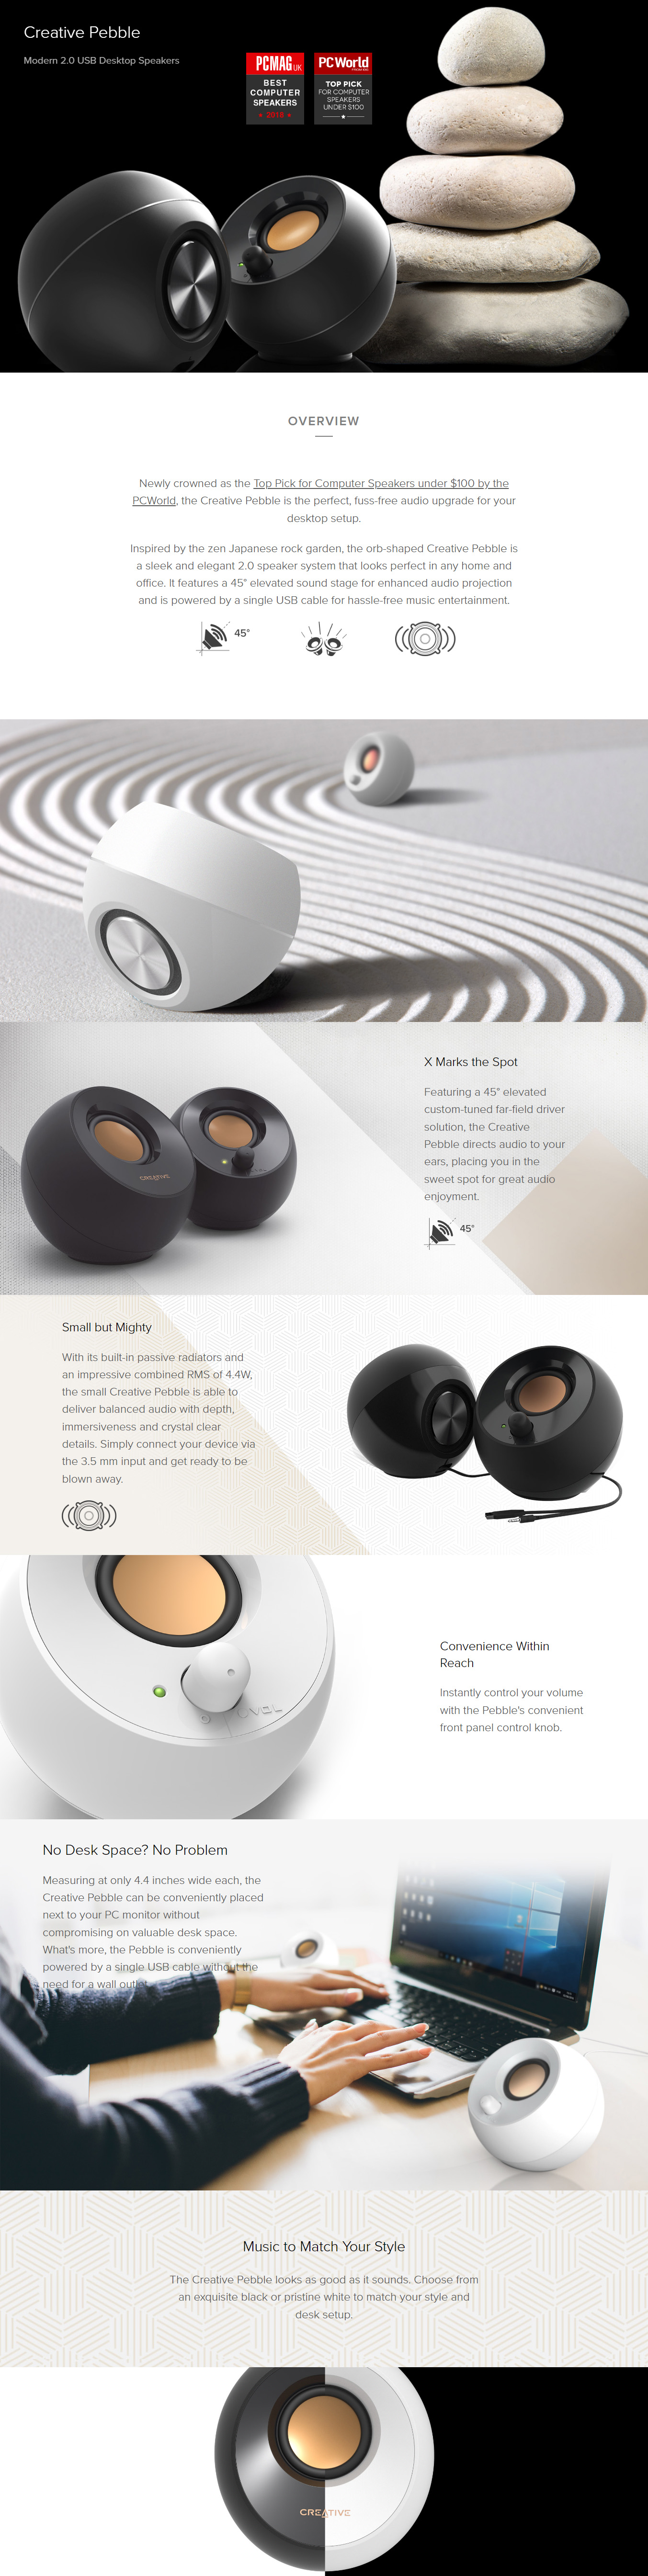 Speakers-Creative-Pebble-2-0-USB-Speaker-Black-1